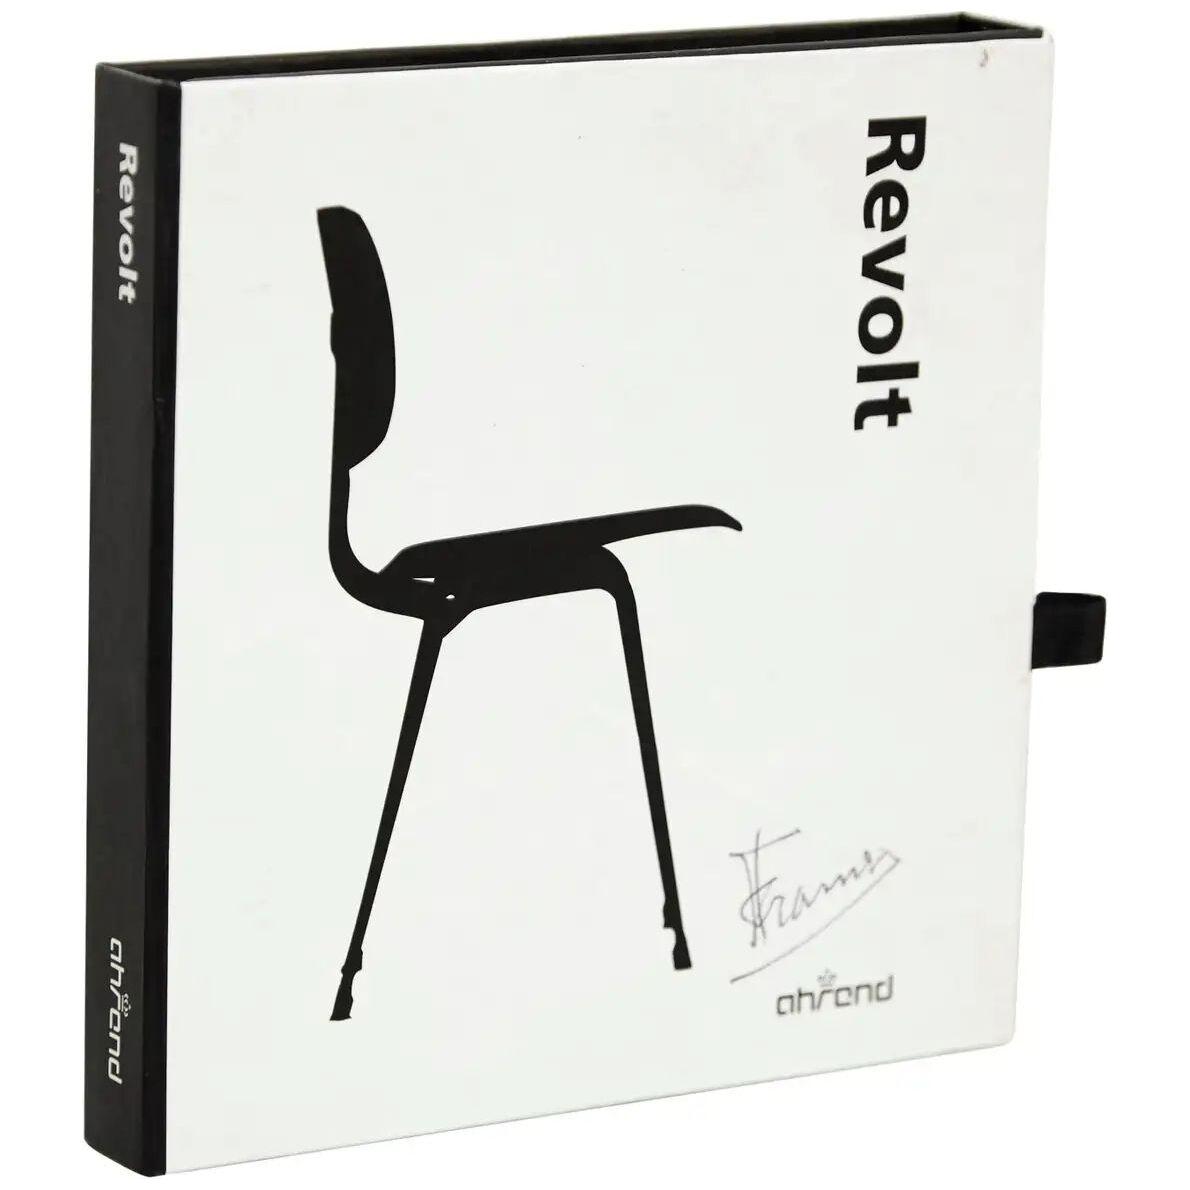 Friso Kramer Hand Signed Miniature Chair Toy Sculpture Ahrend de Cyrkel